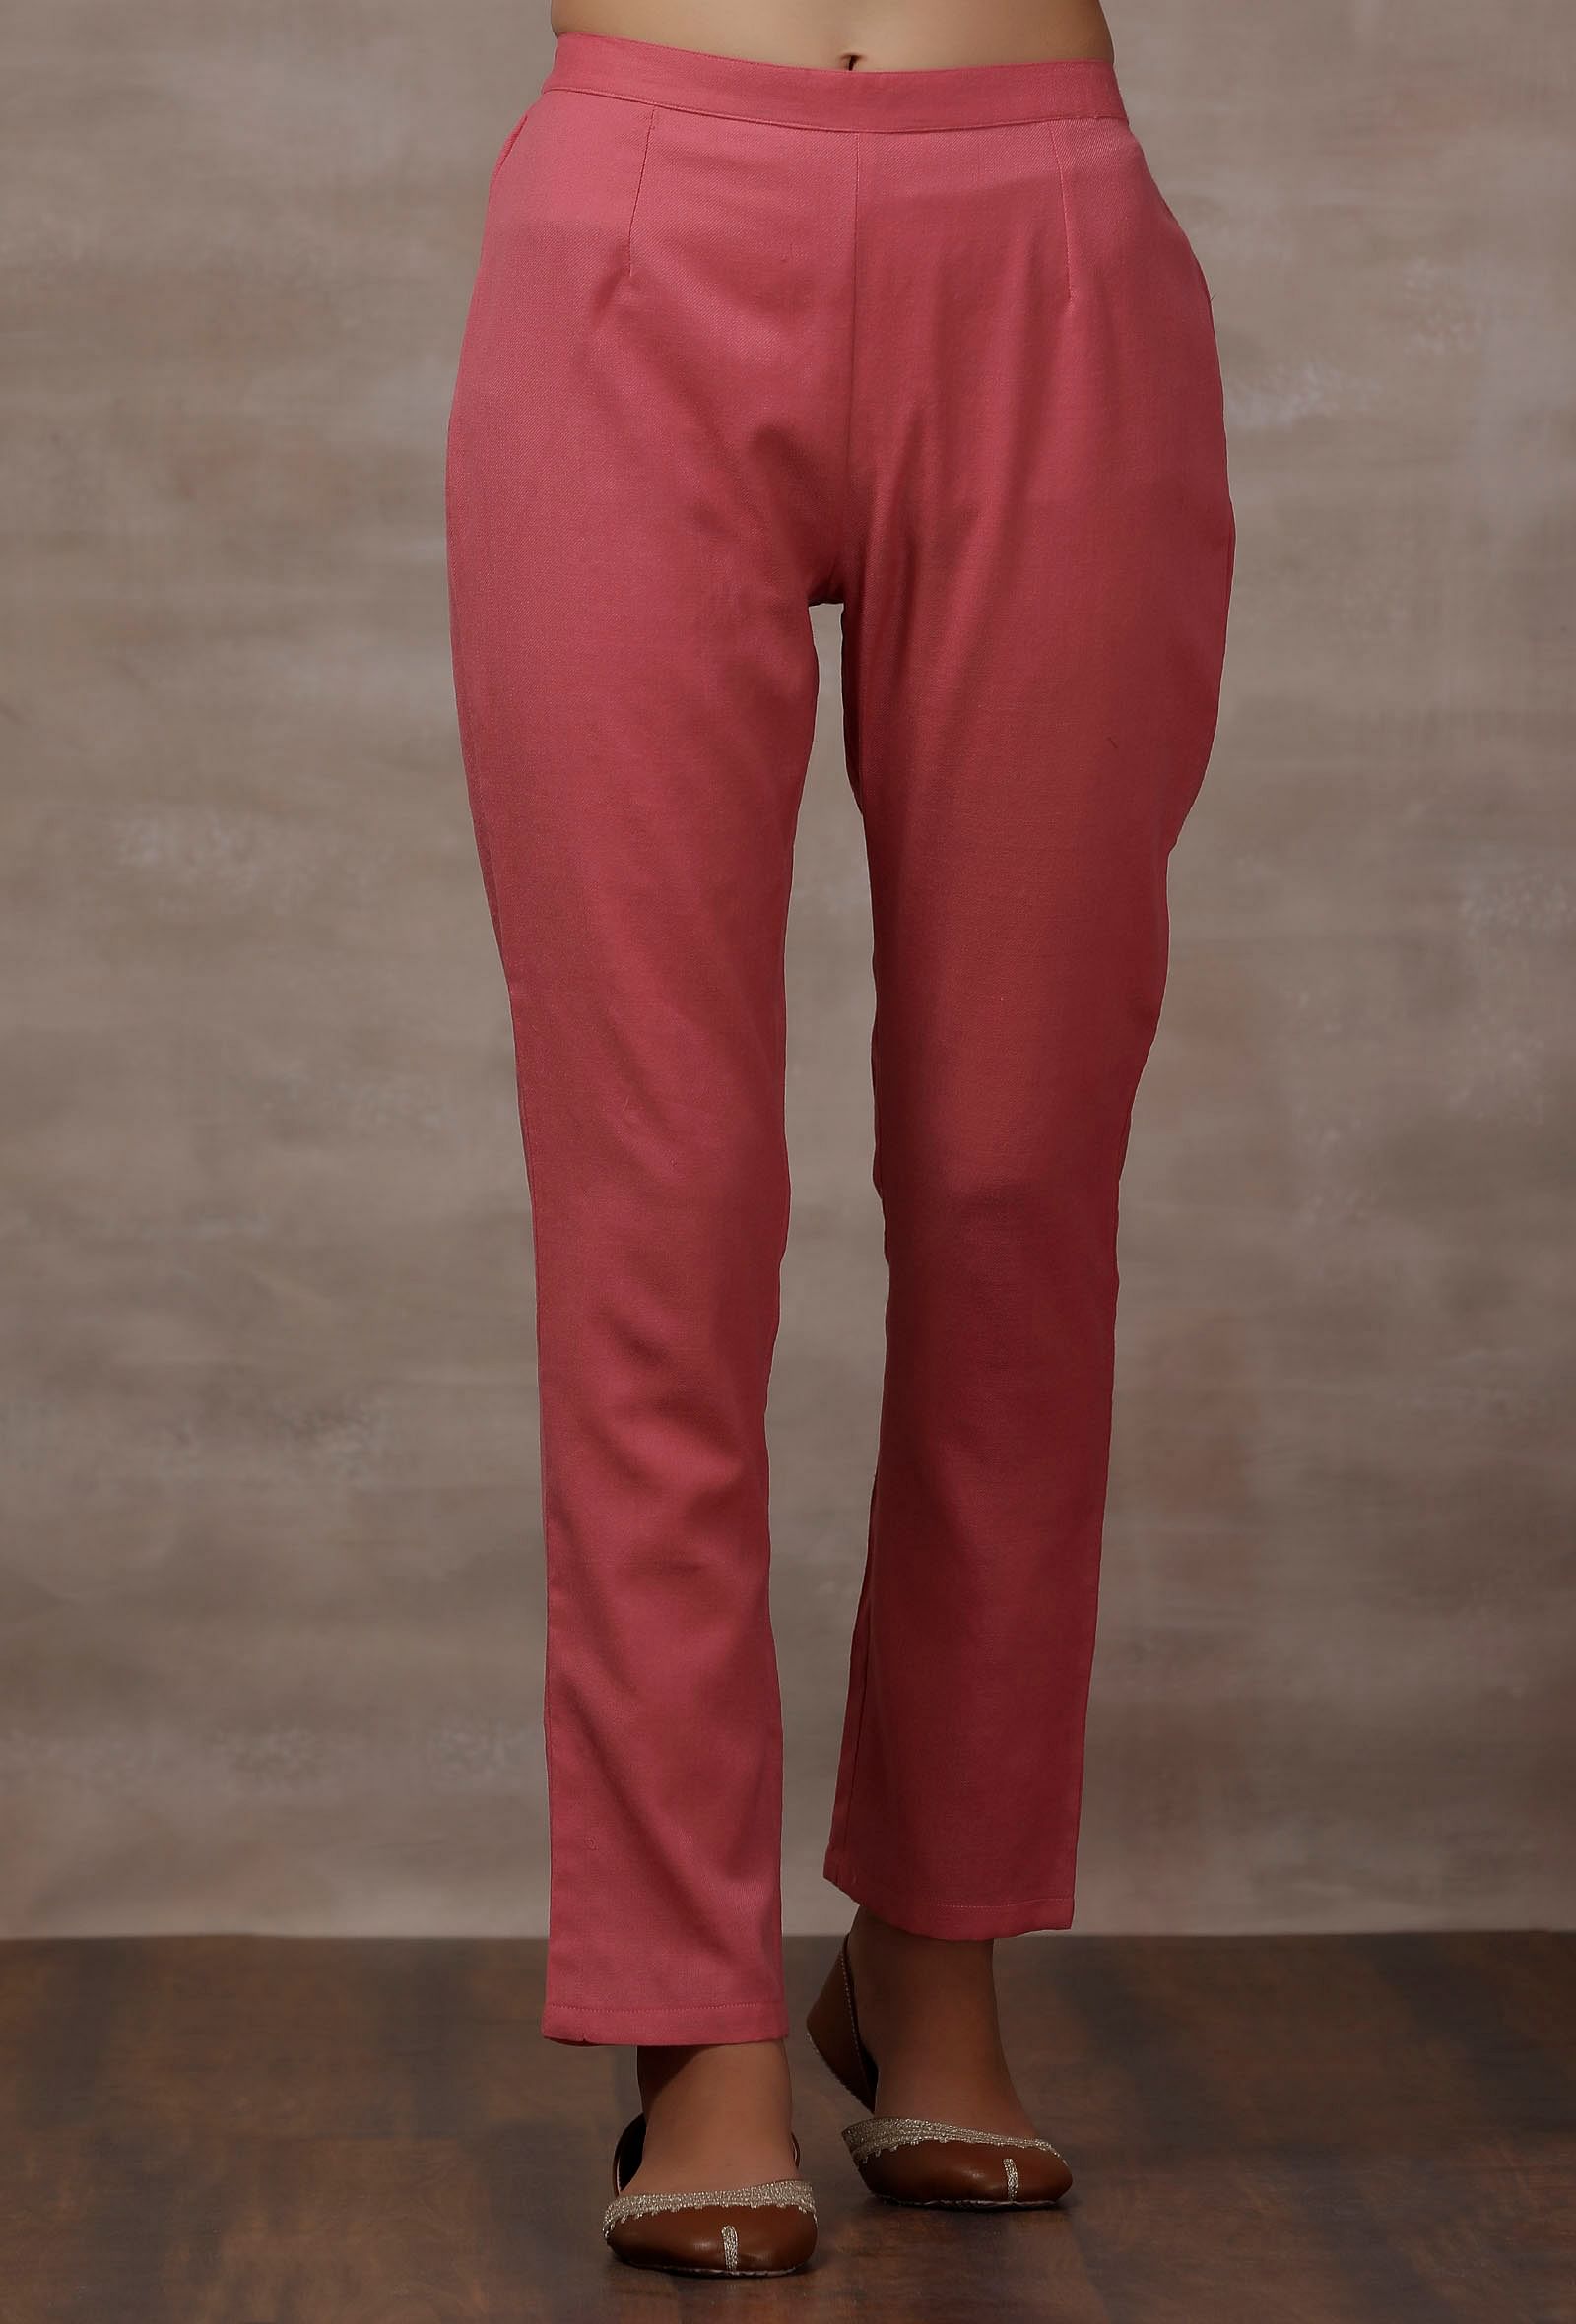 Set of 2: Pink Cashmilon Phiran Kurta with Pink Cashmilon Pants